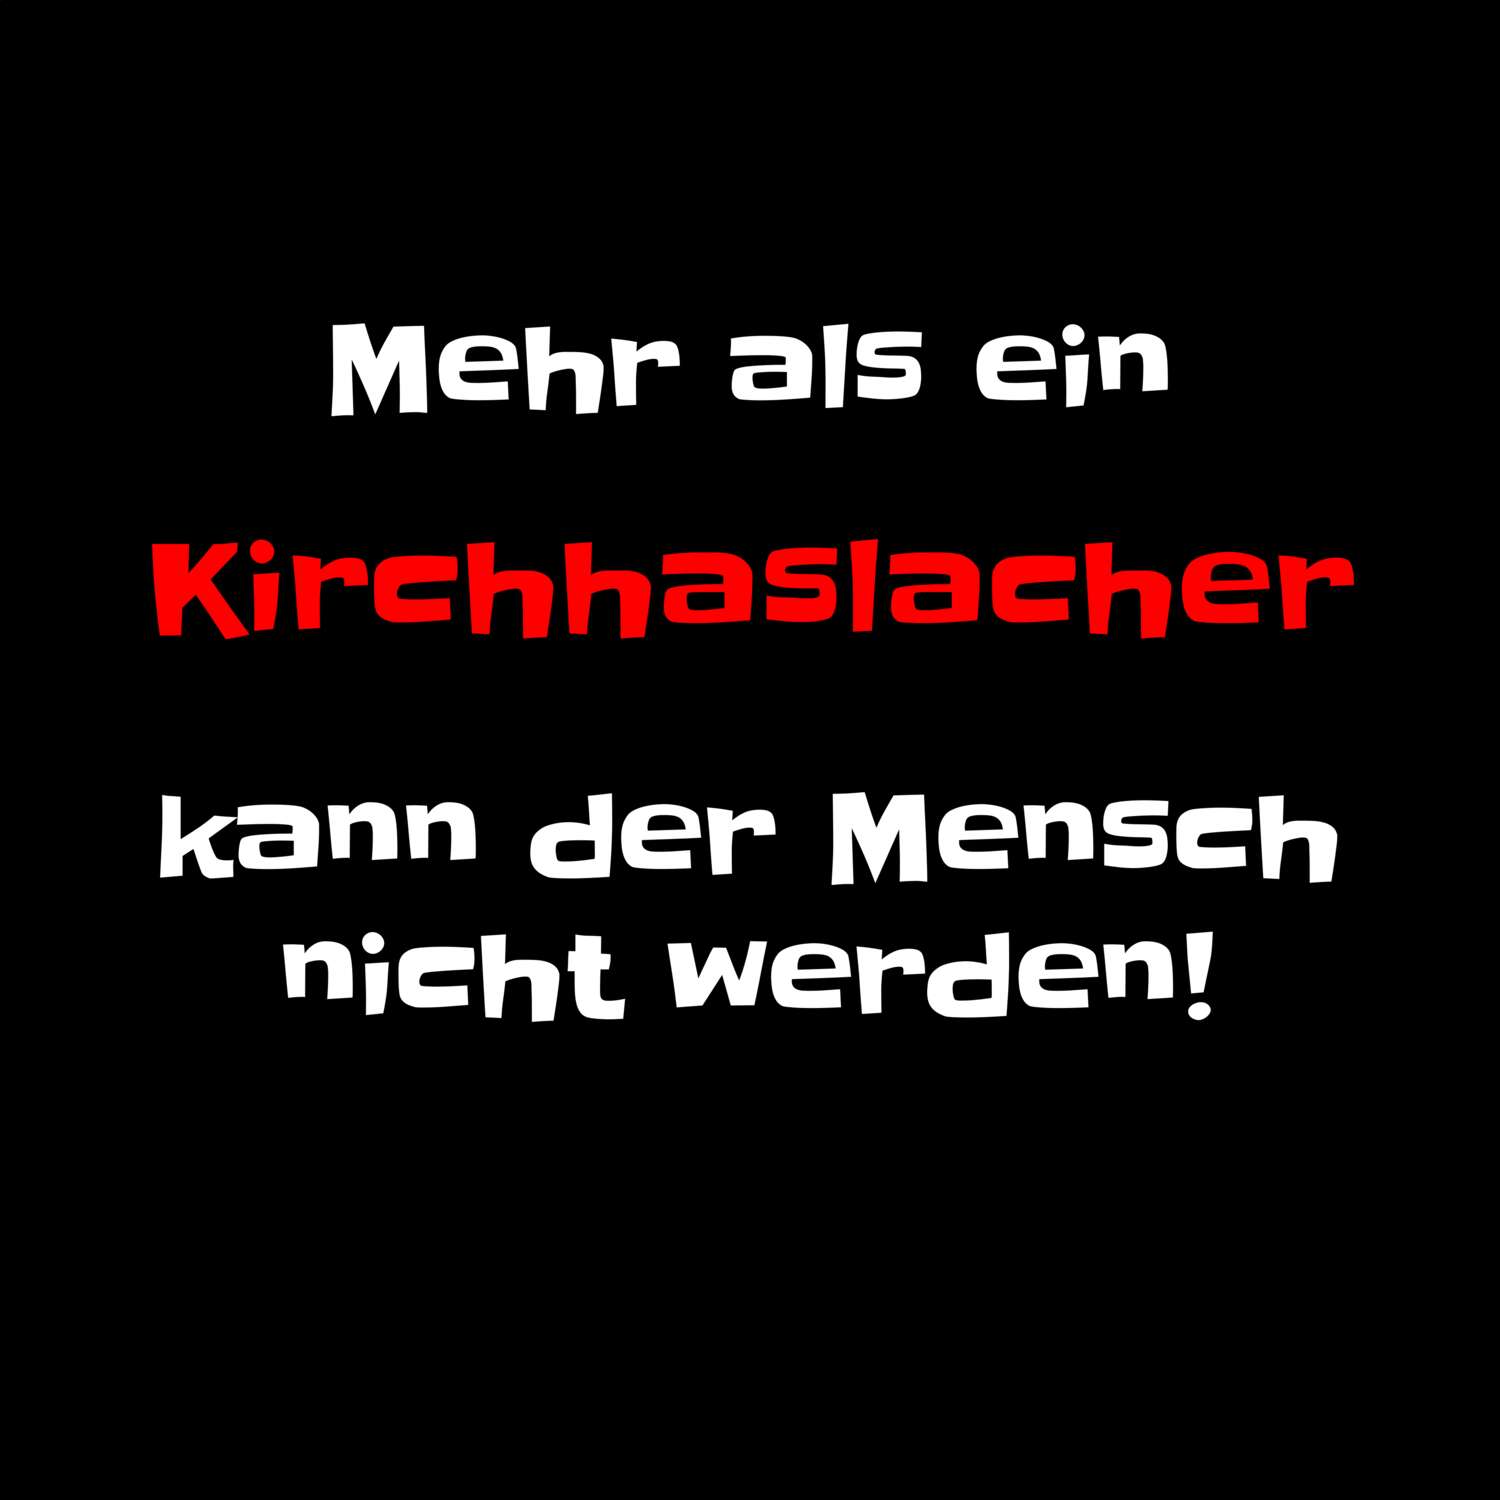 Kirchhaslach T-Shirt »Mehr als ein«